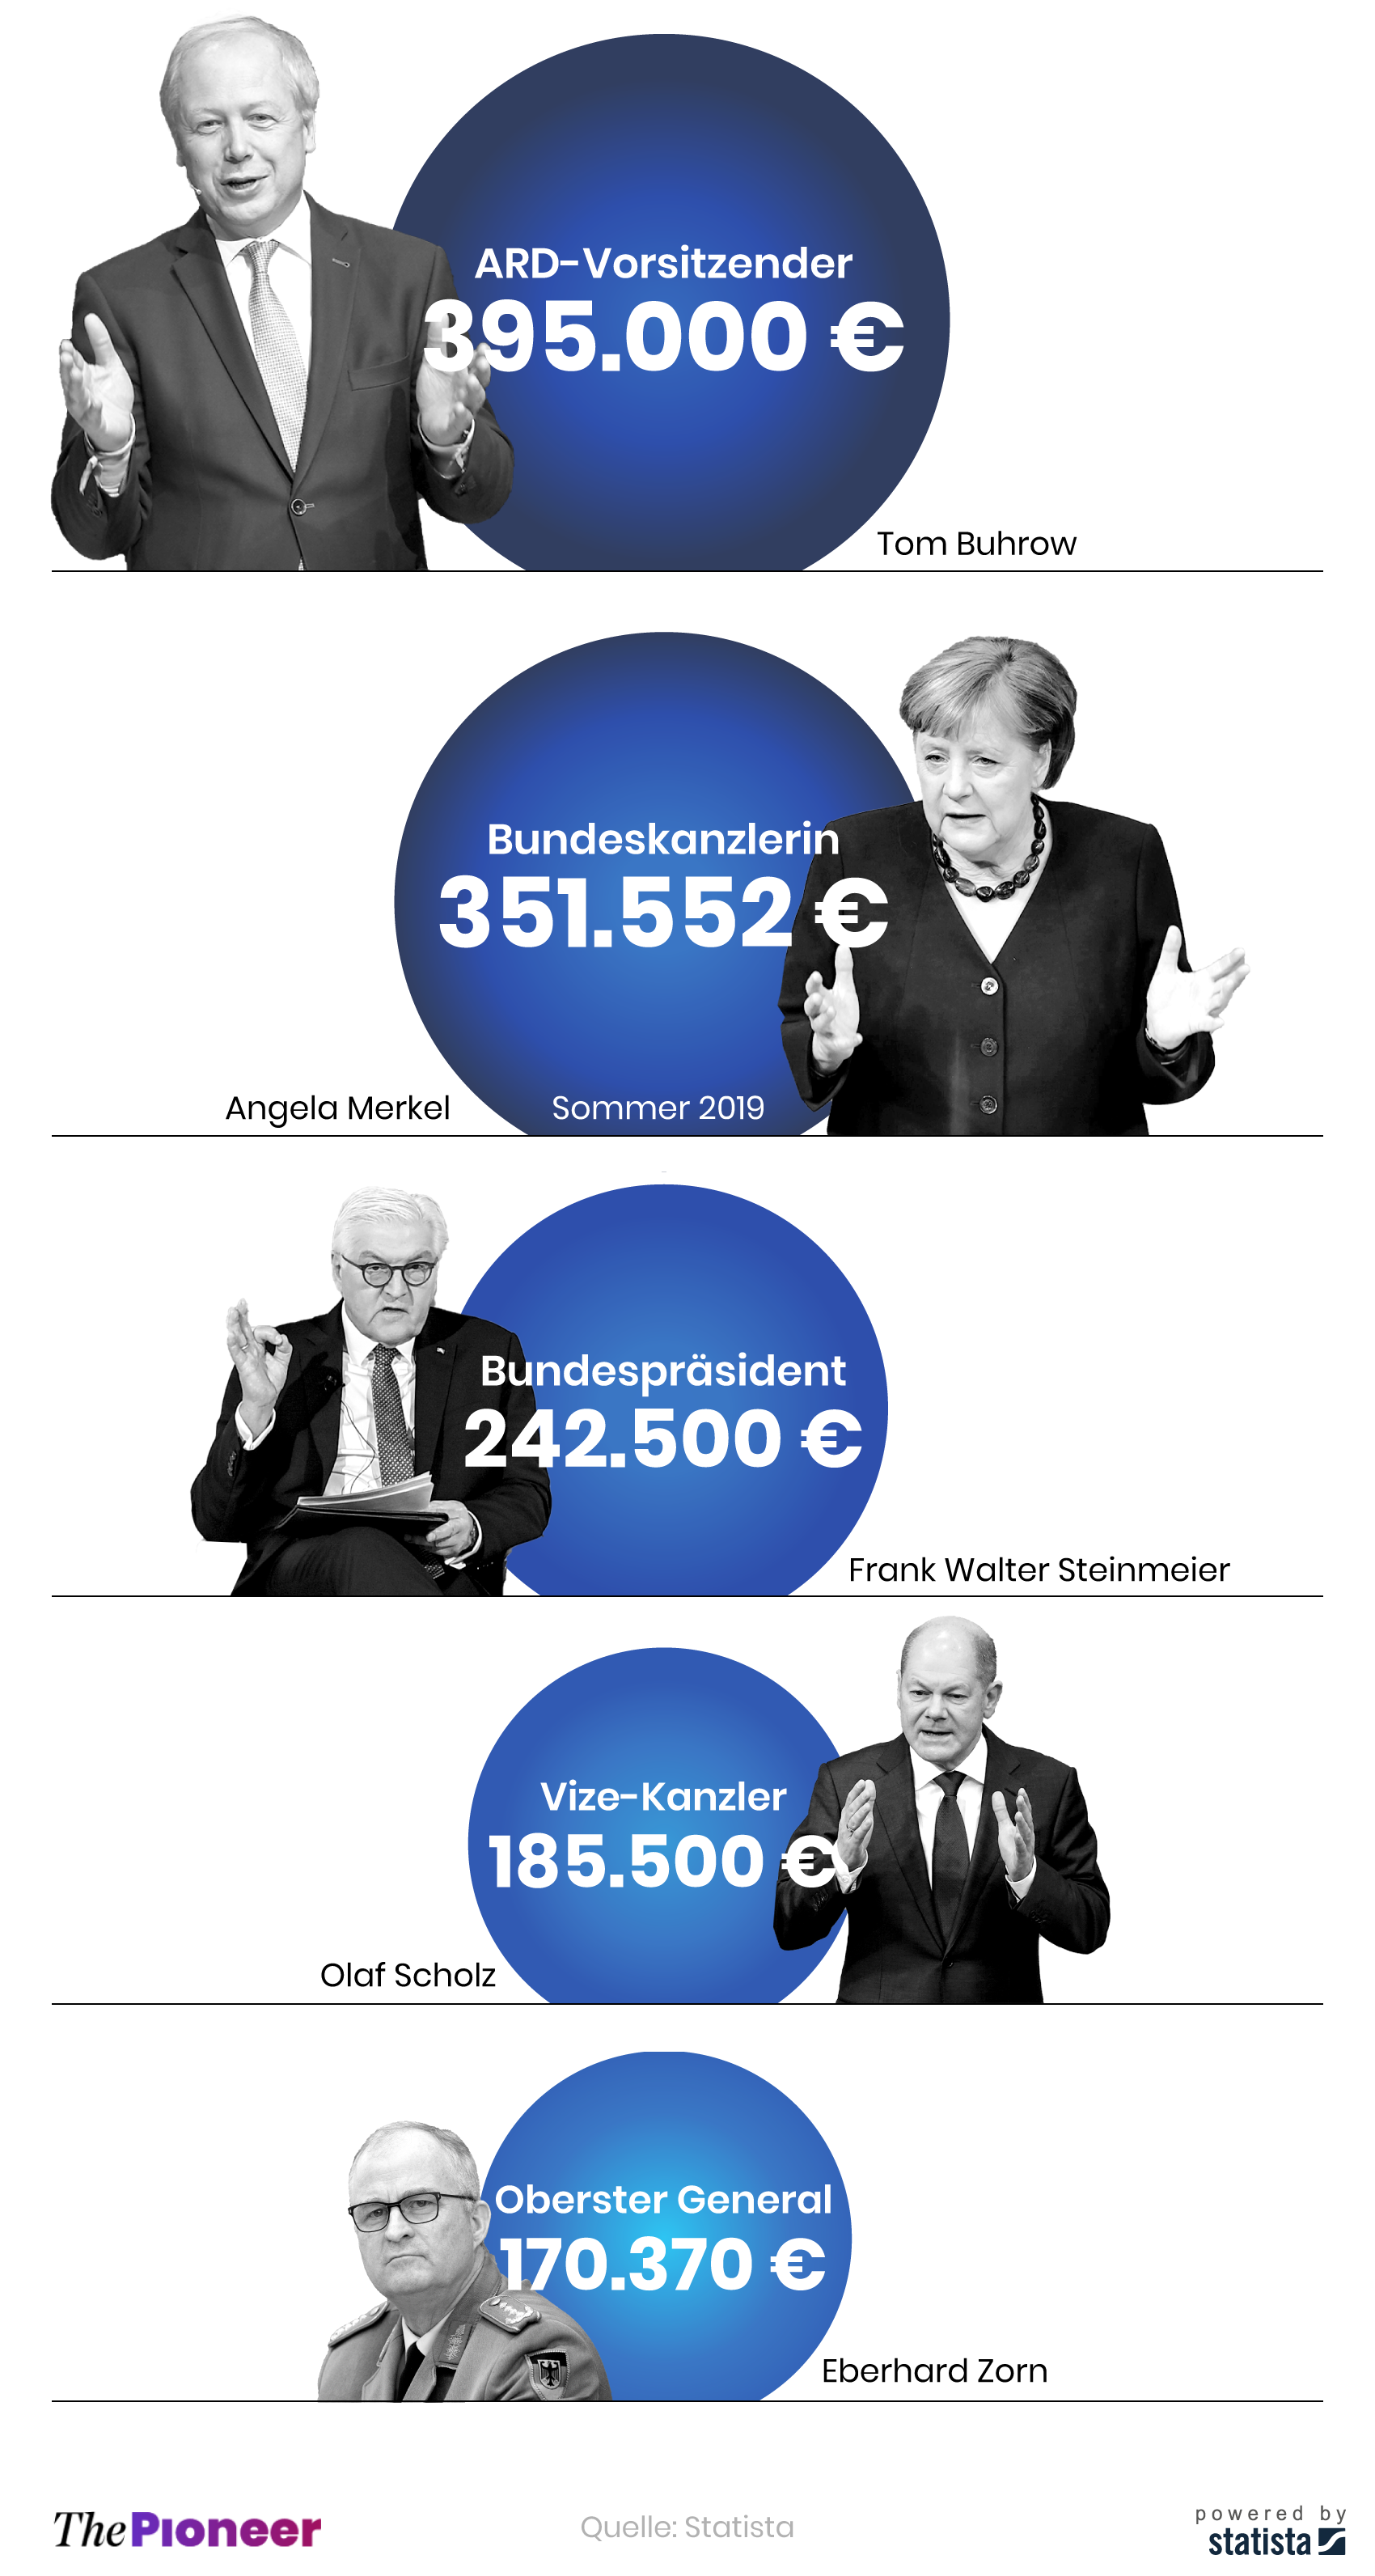 Jahresgehalt des ARD-Vorsitzenden im Vergleich zu den Jahresgehältern von Staatsrepräsentanten, in Euro